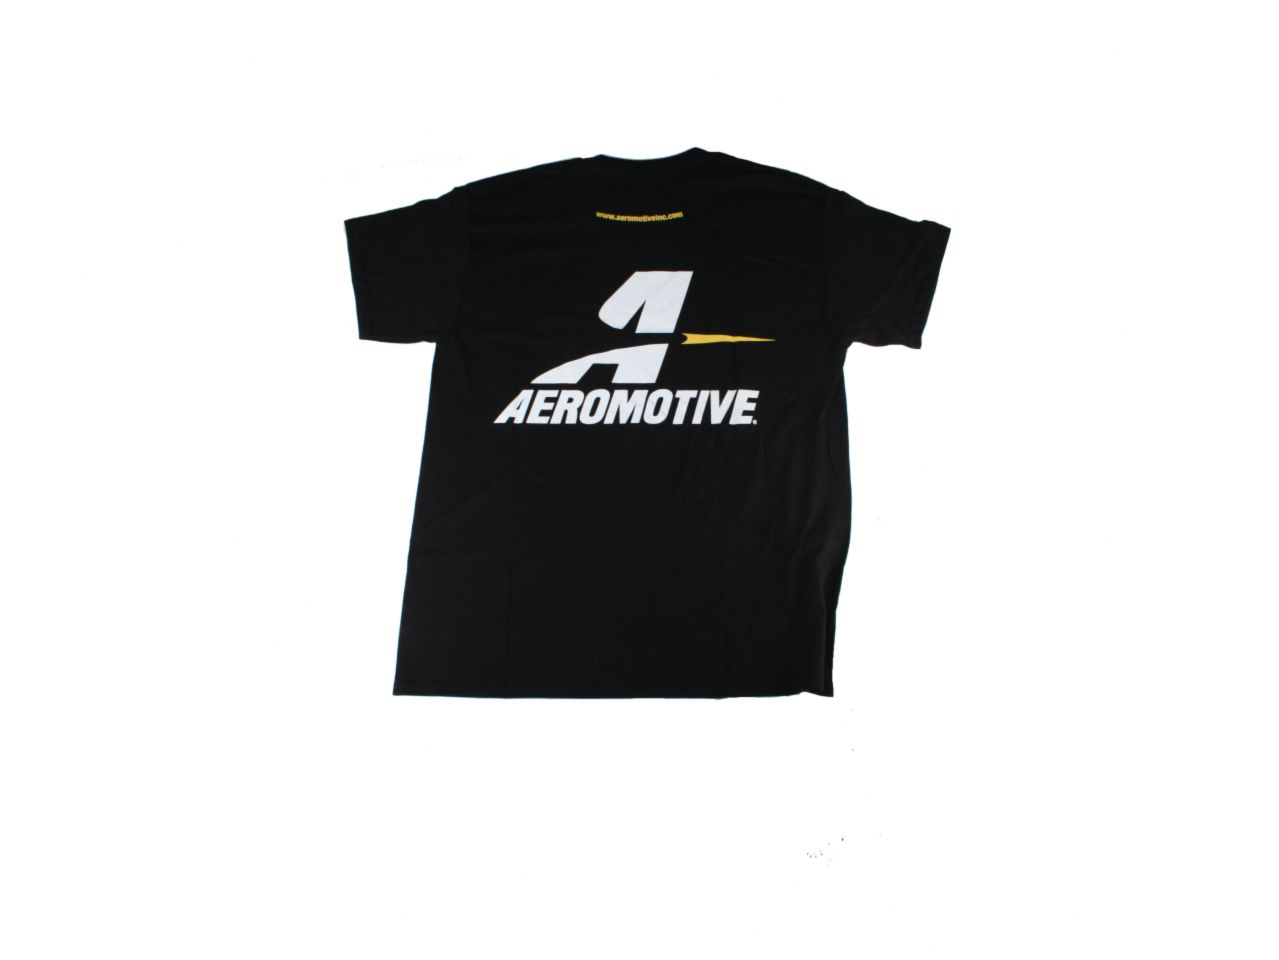 Aeromotive Shirts 91016 Item Image